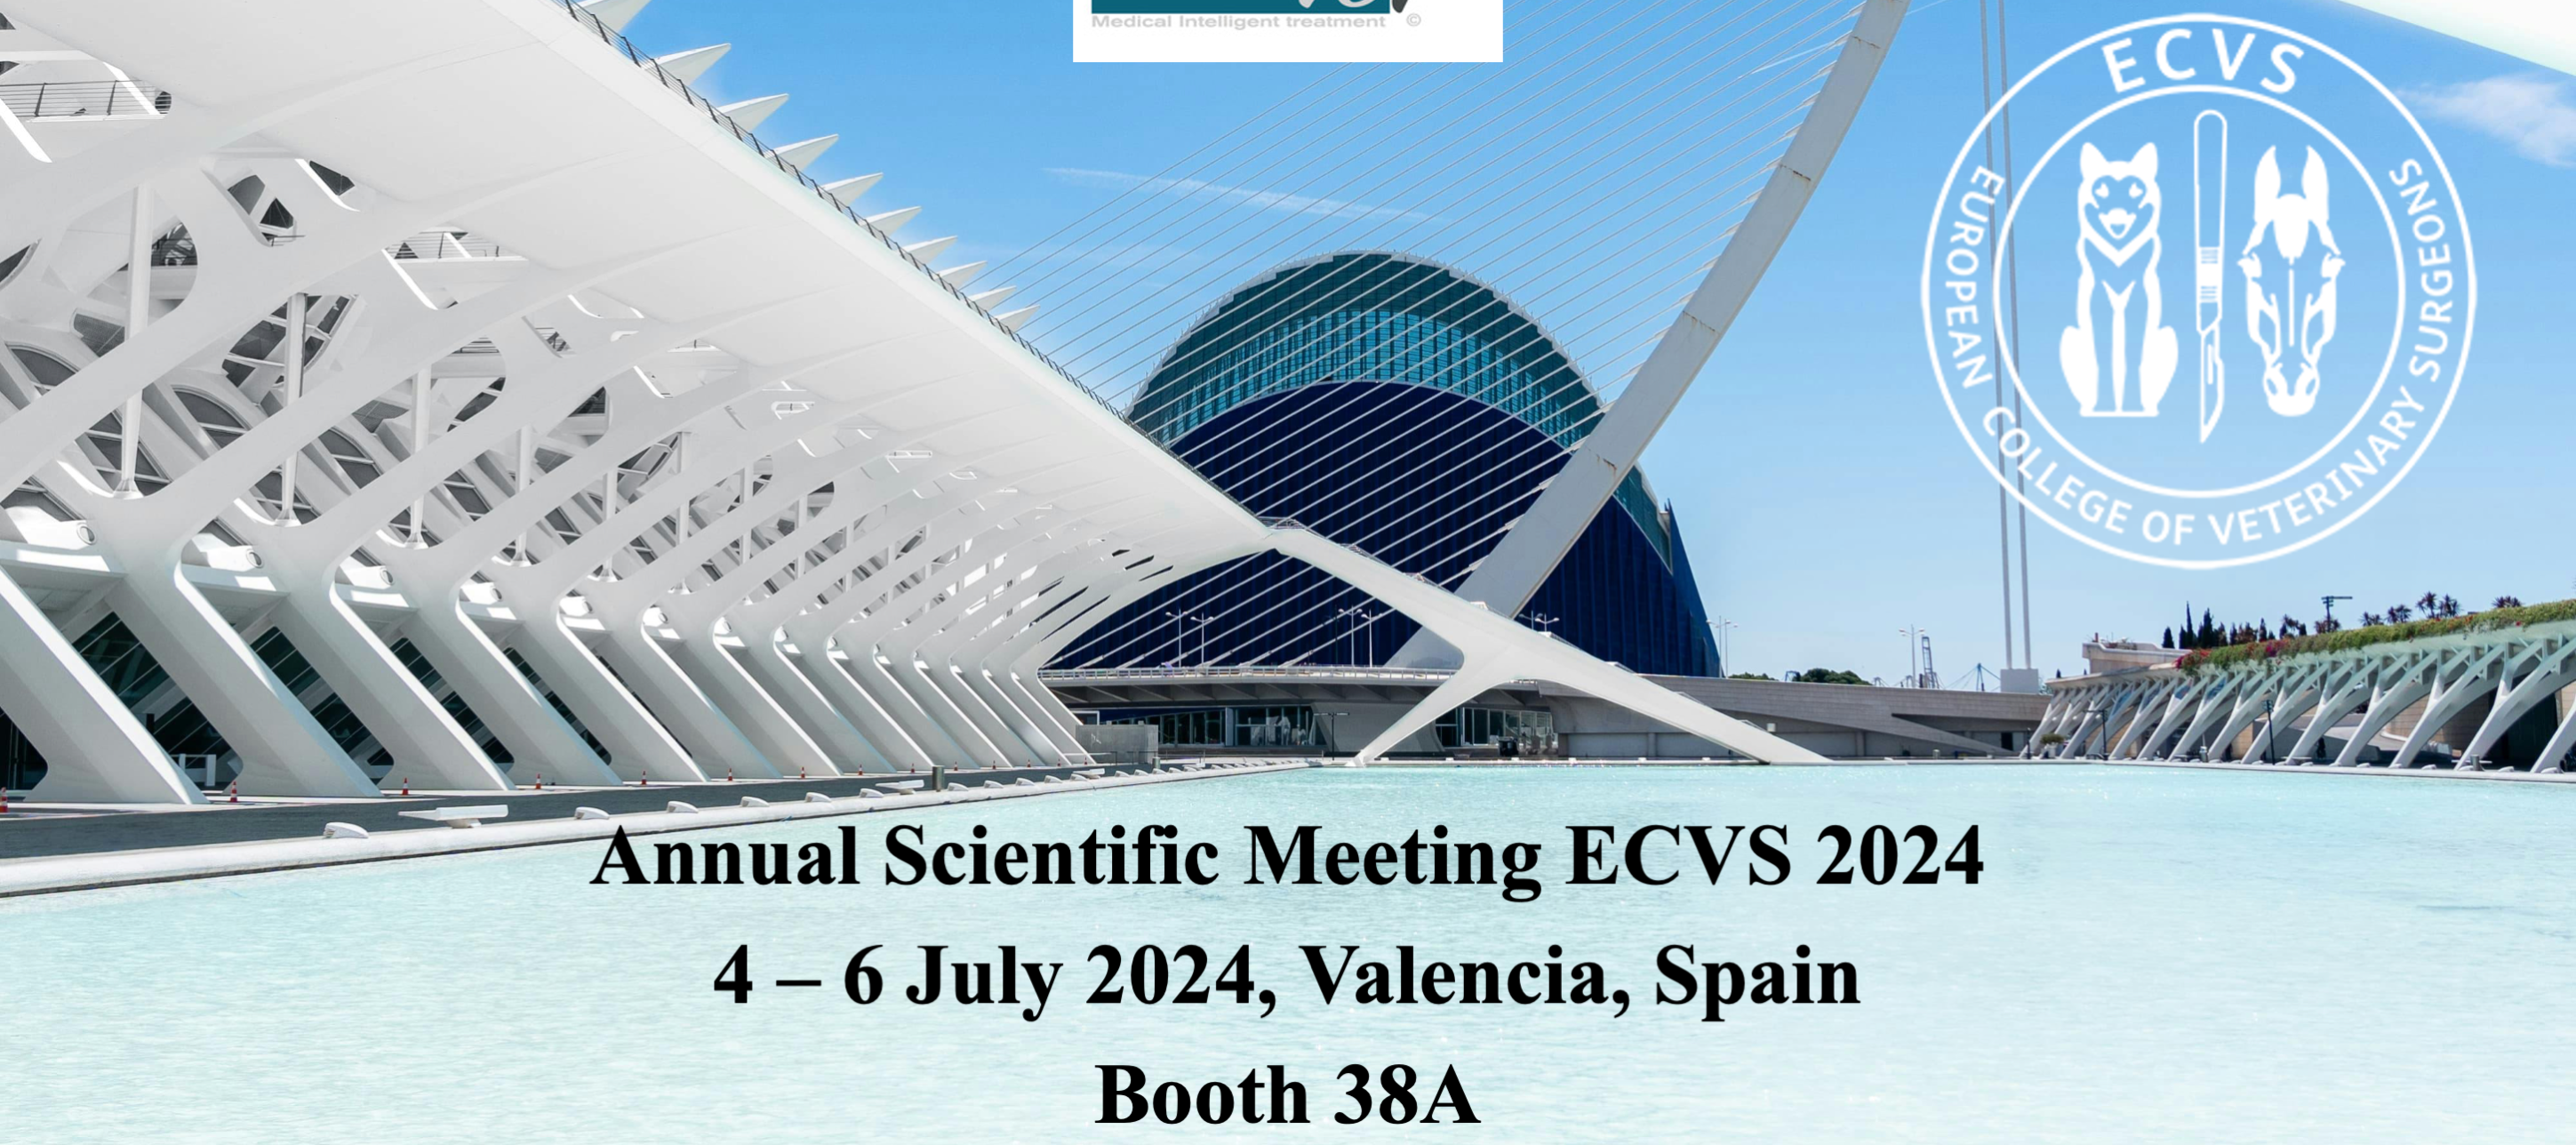 Second participation in the ECVS Congress - 2024 Valencia